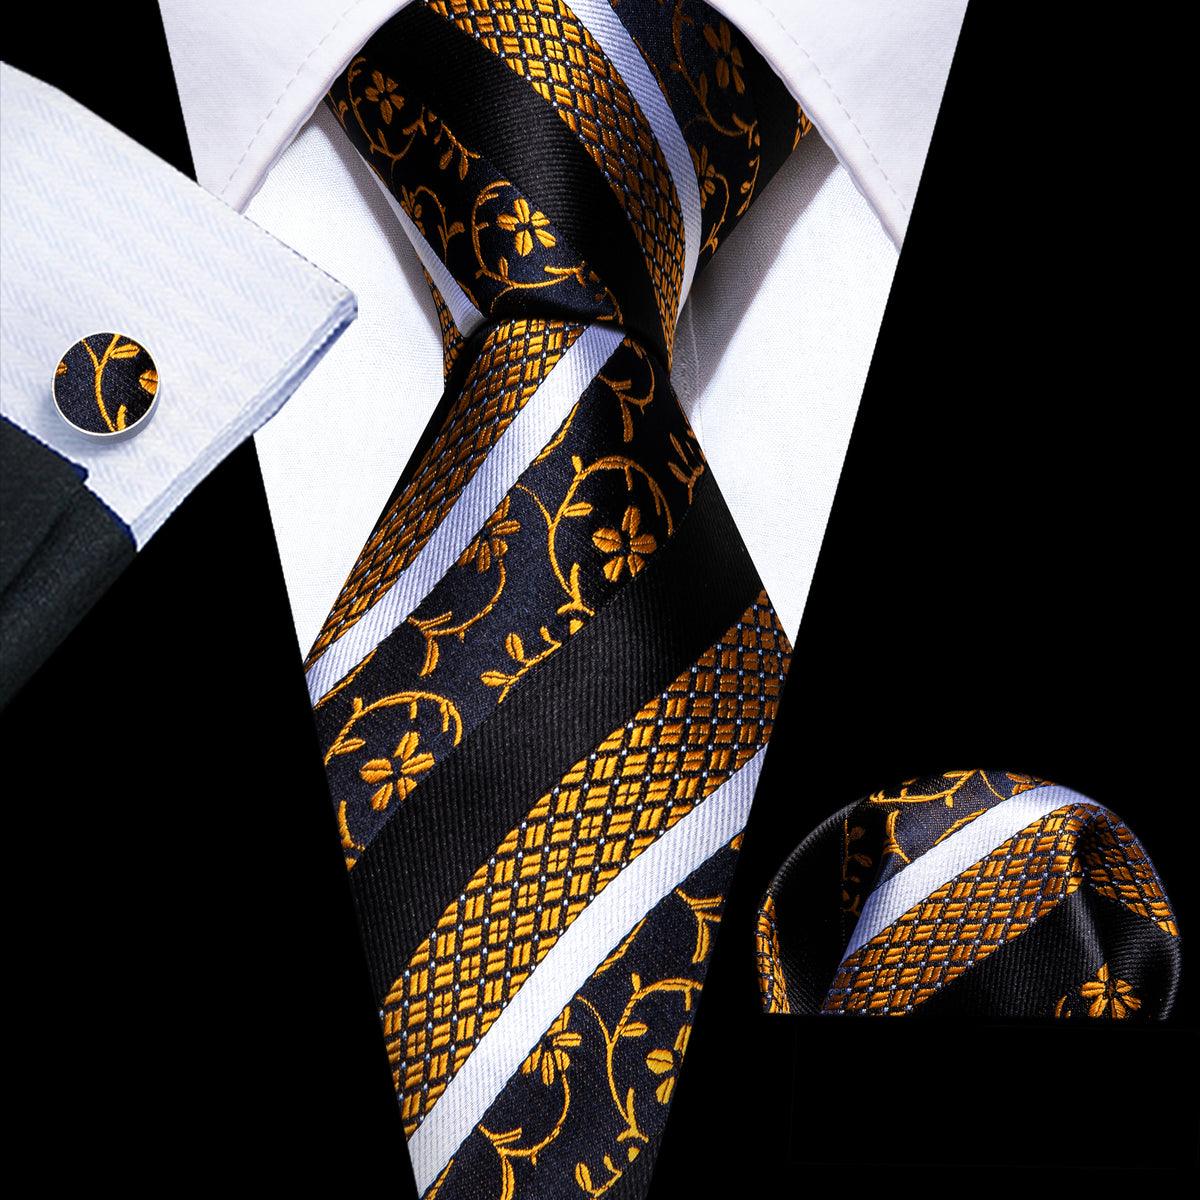 Black Gold Stripe Floral Silk Tie Pocket Square Cufflink Set - STYLETIE